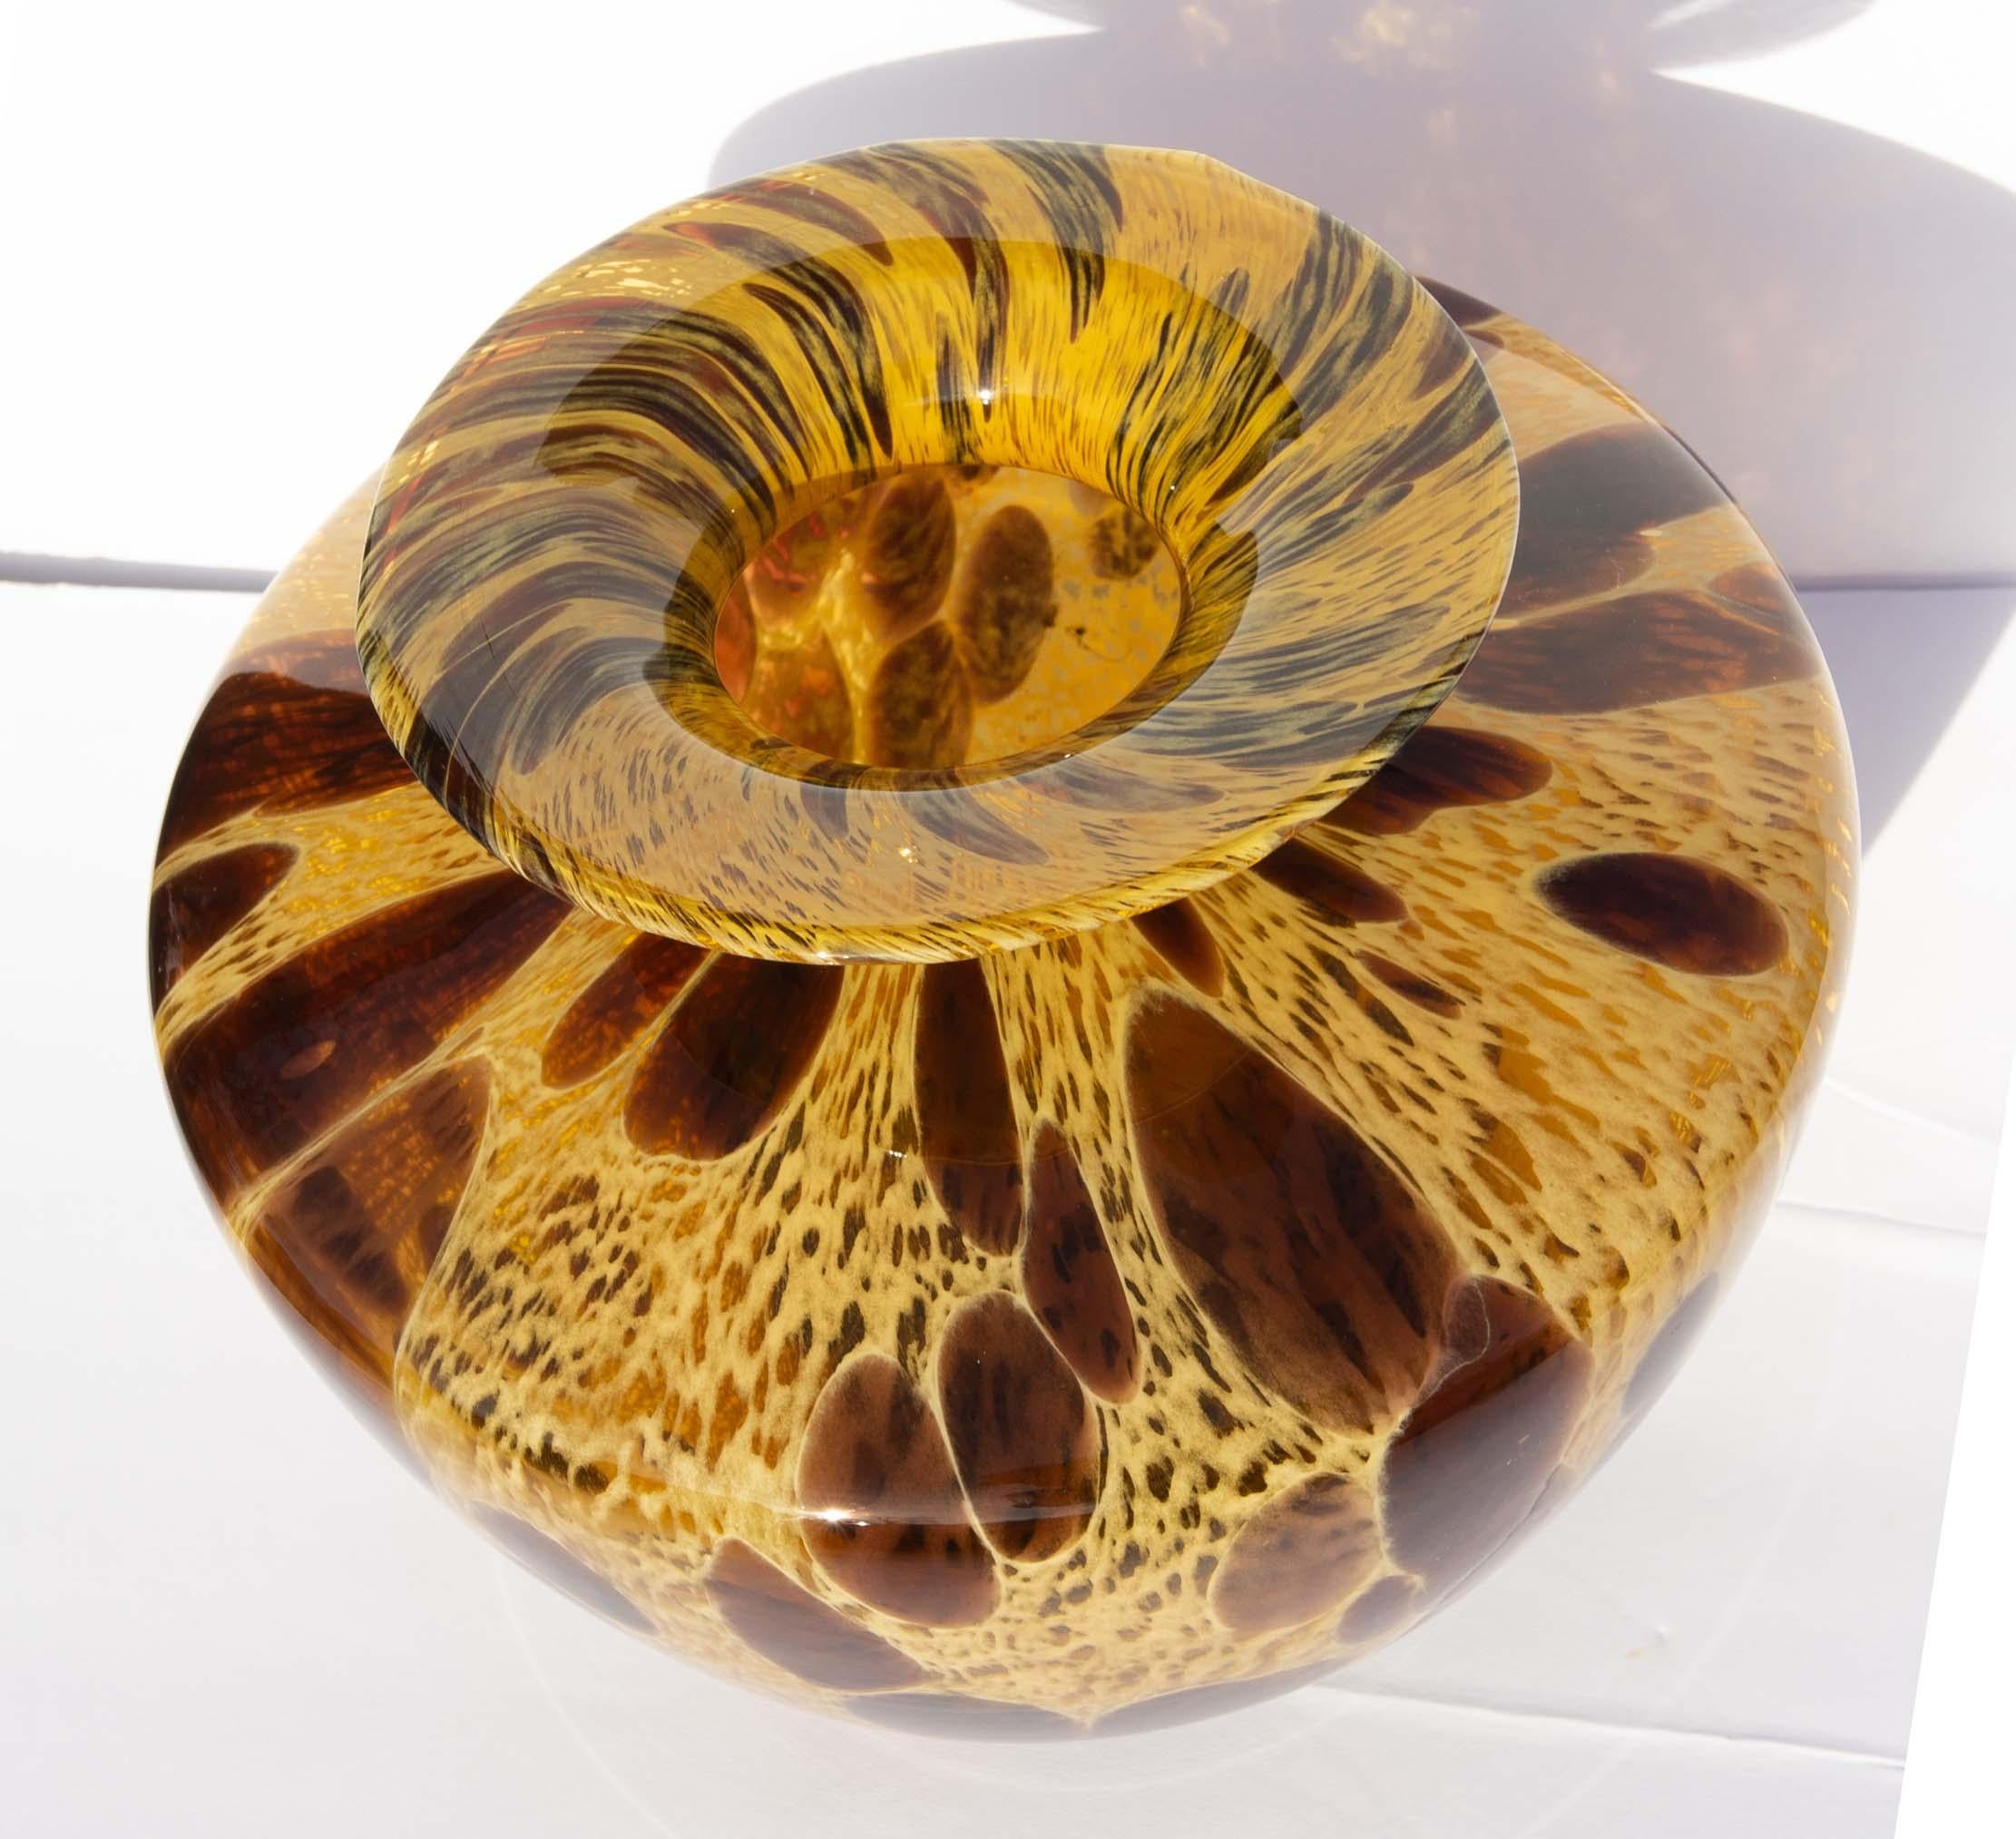 Tortoise shell Murano art glass vase. By Vetri Artistic.